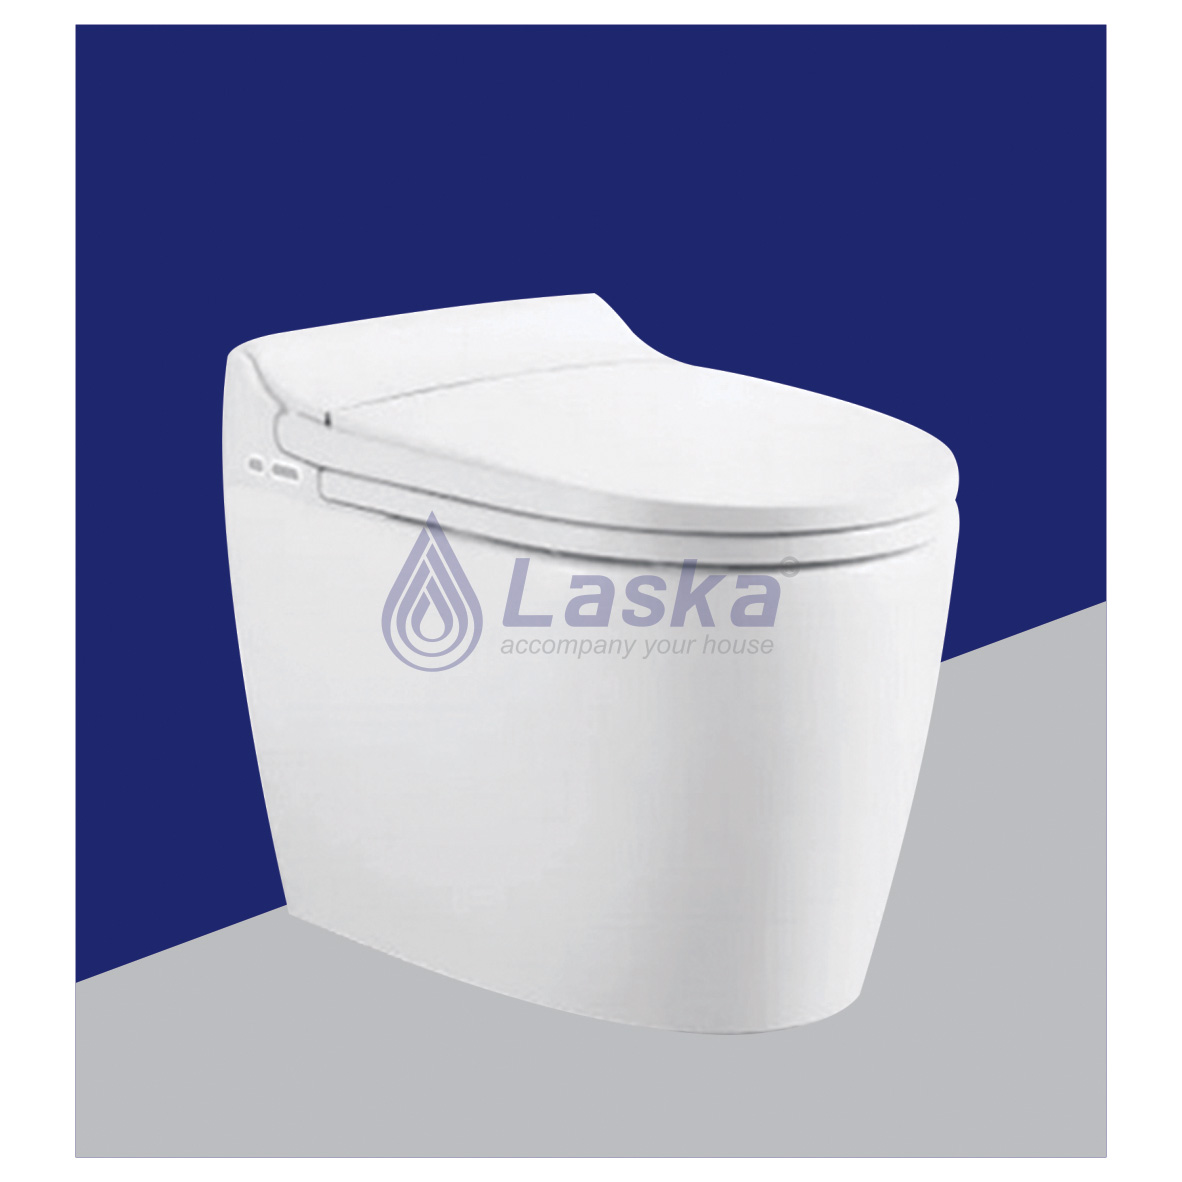 bồn cầu LKBC-TM01 cao cấp kết hợp nắp rửa điện tử đến từ thương hiệu thiết bị vệ sinh LASKA